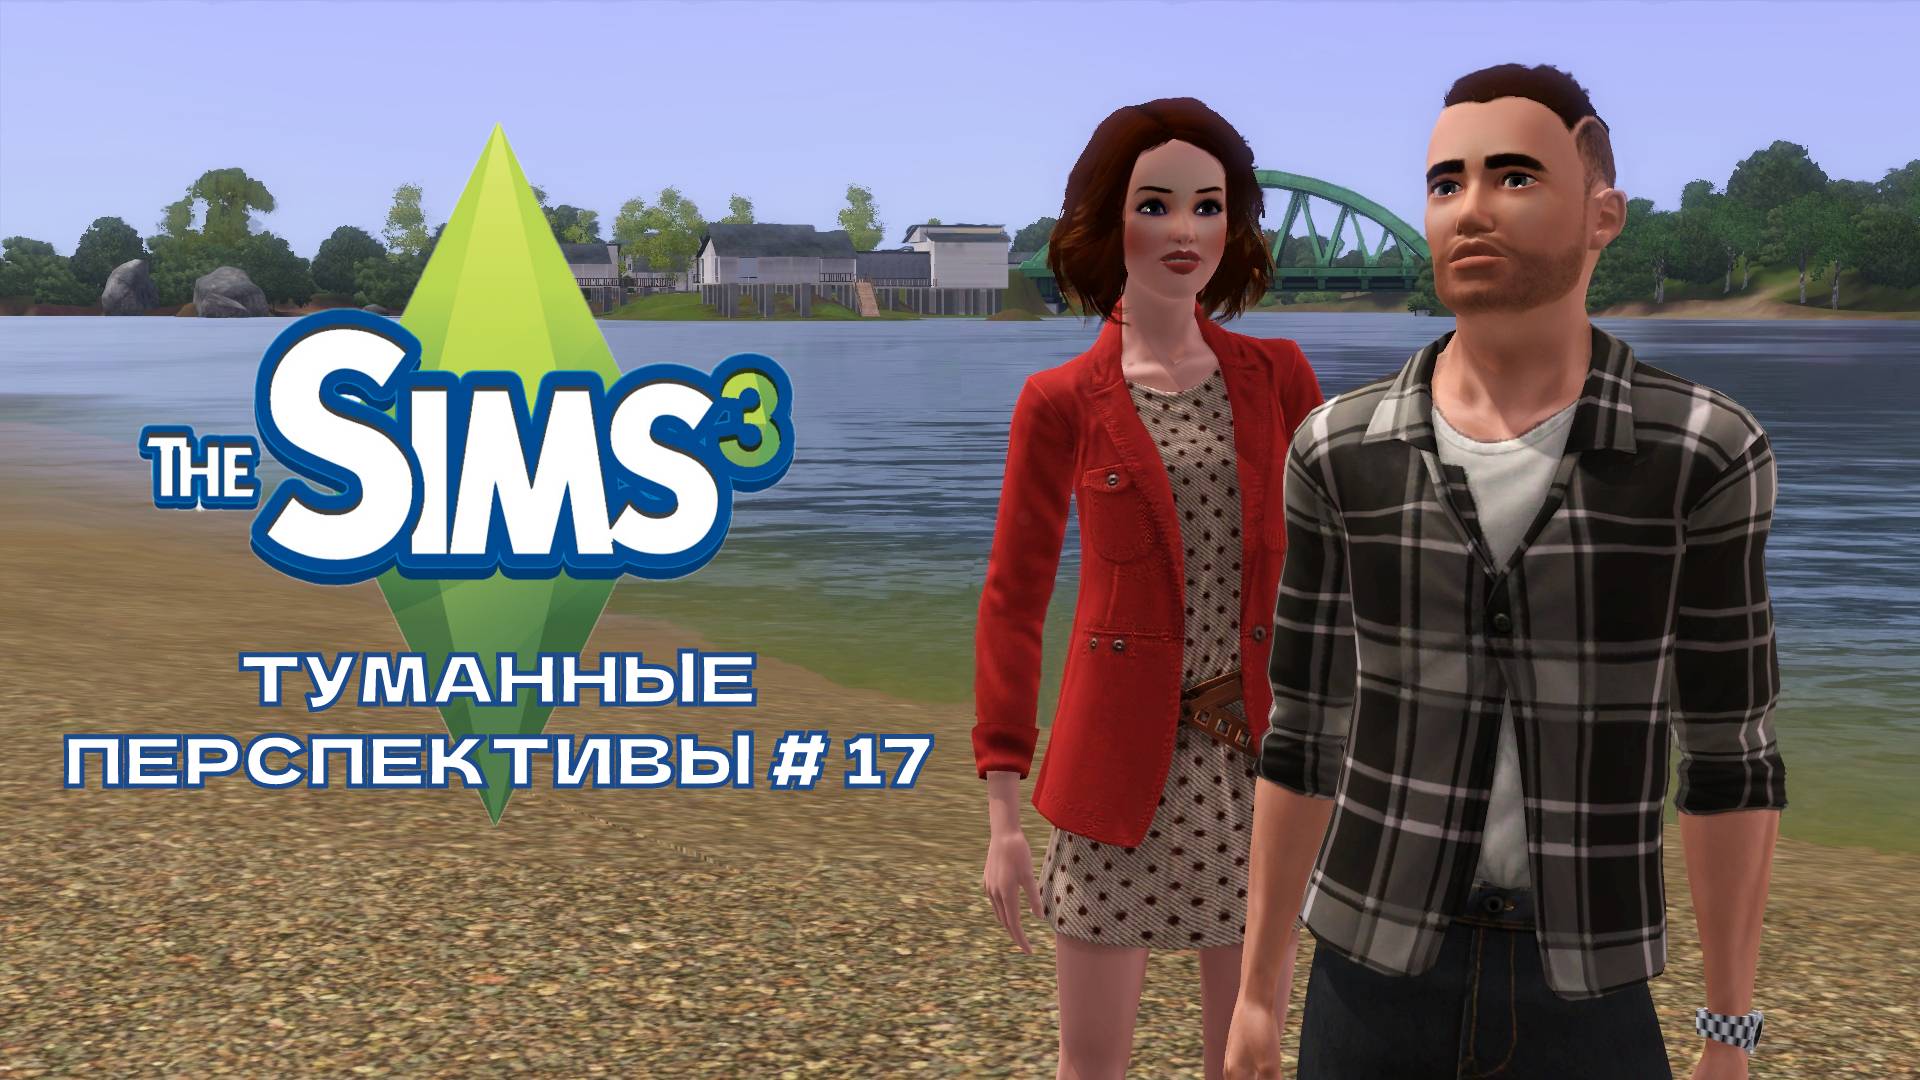 The Sims 3. Туманные перспективы #17.Грубая гостья